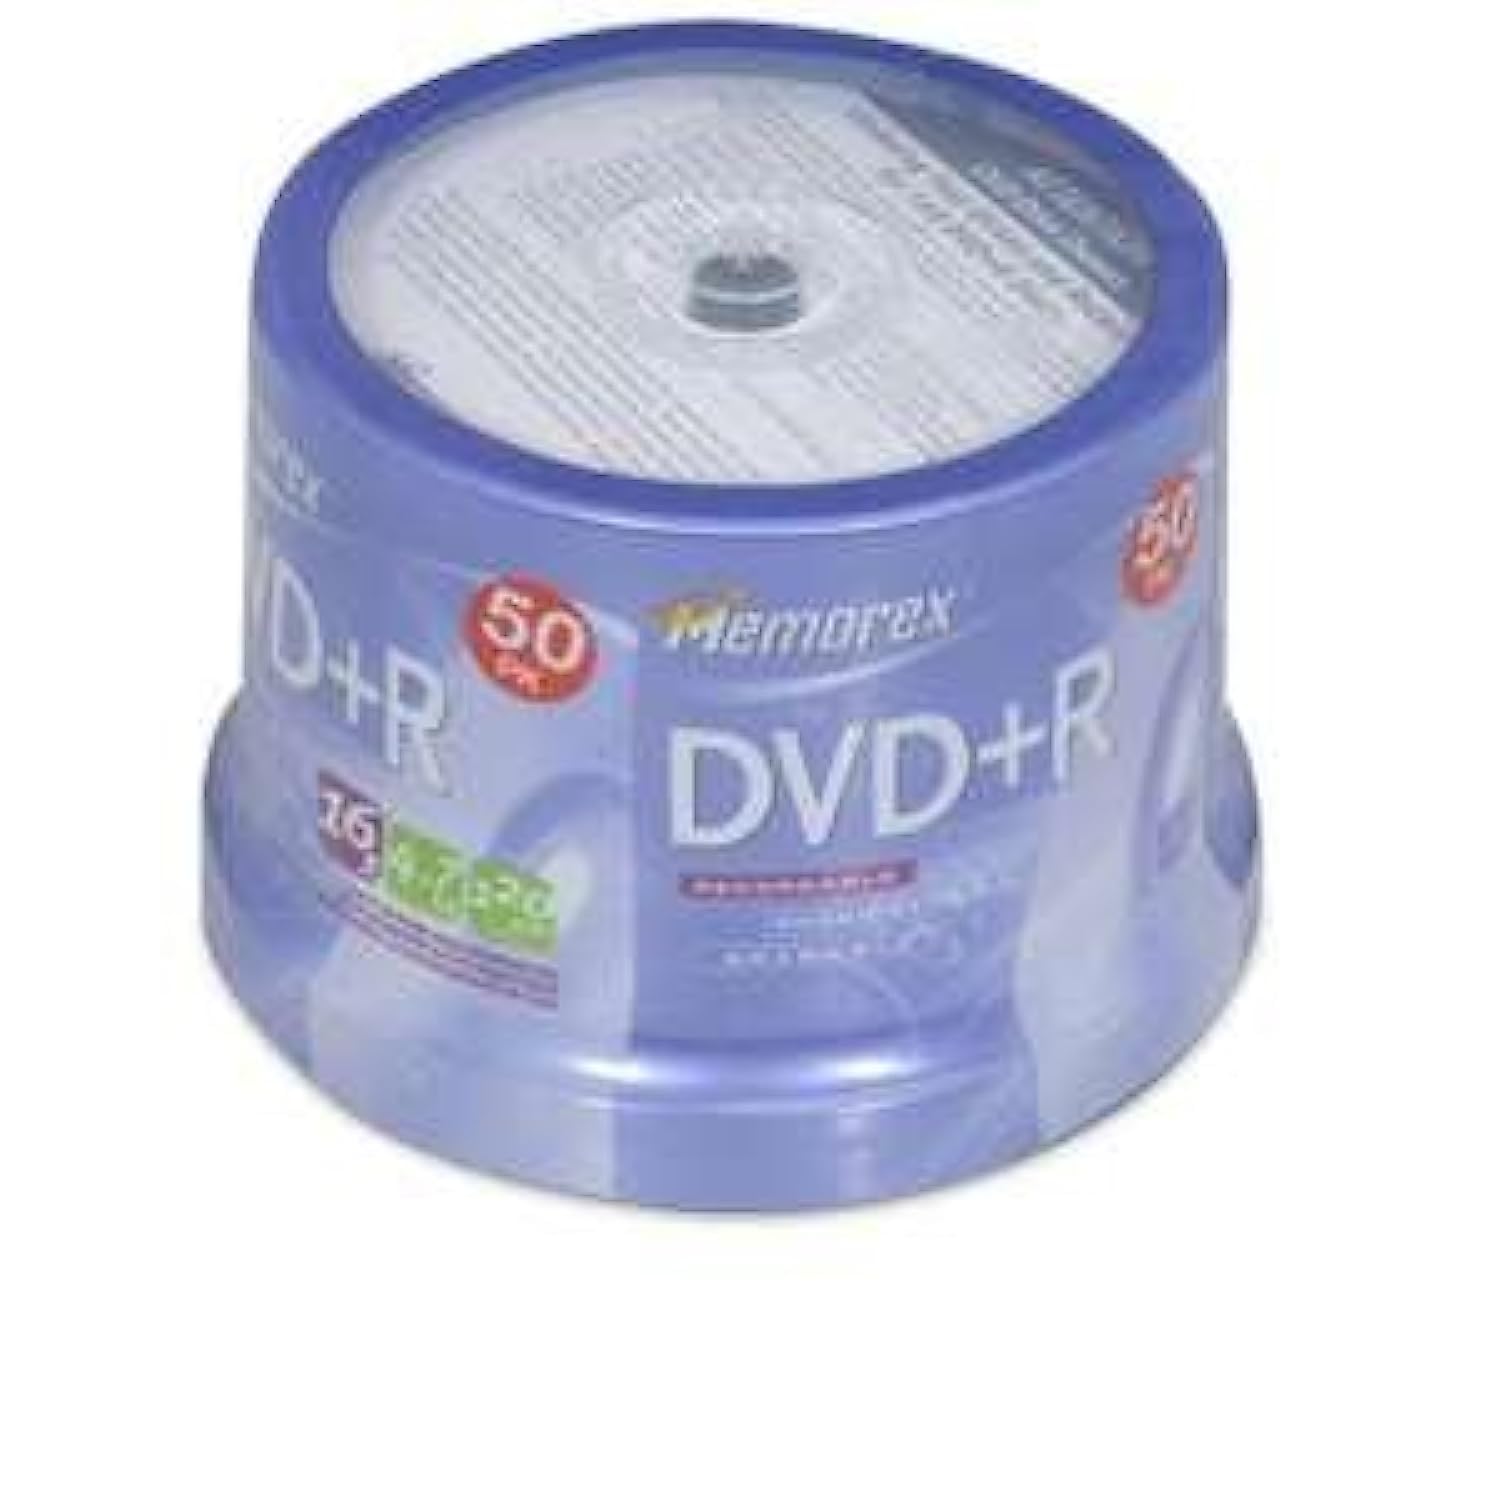 Memorex DVD+R 16x 4.7GB 50 Pack Spindle